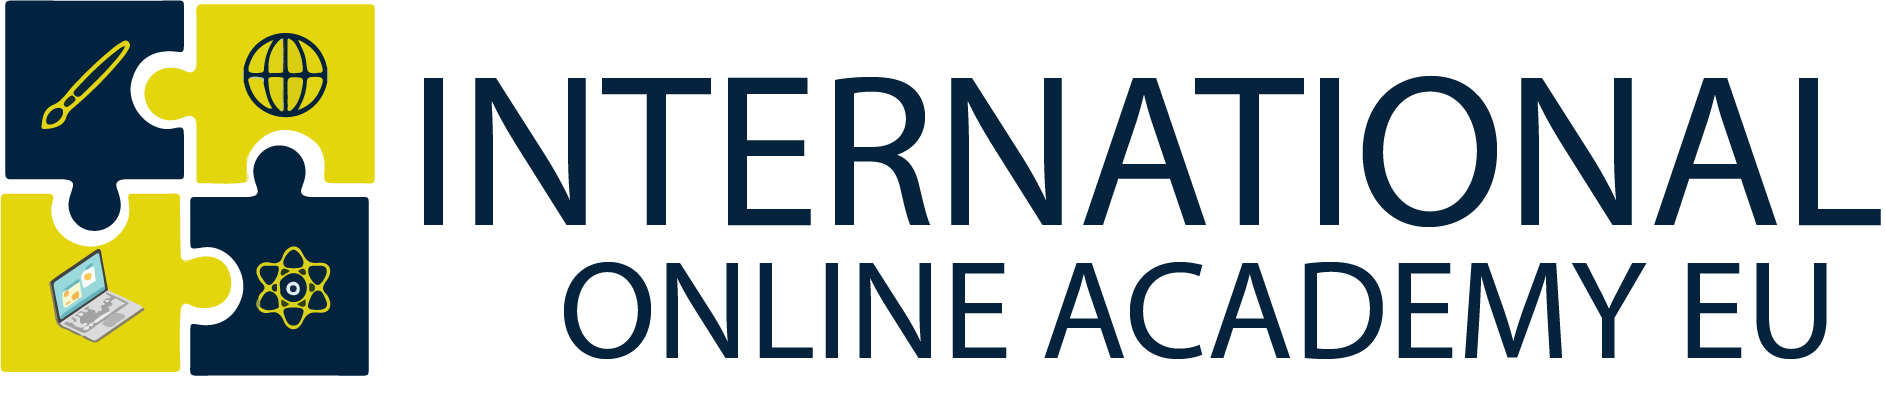 International online academy EU